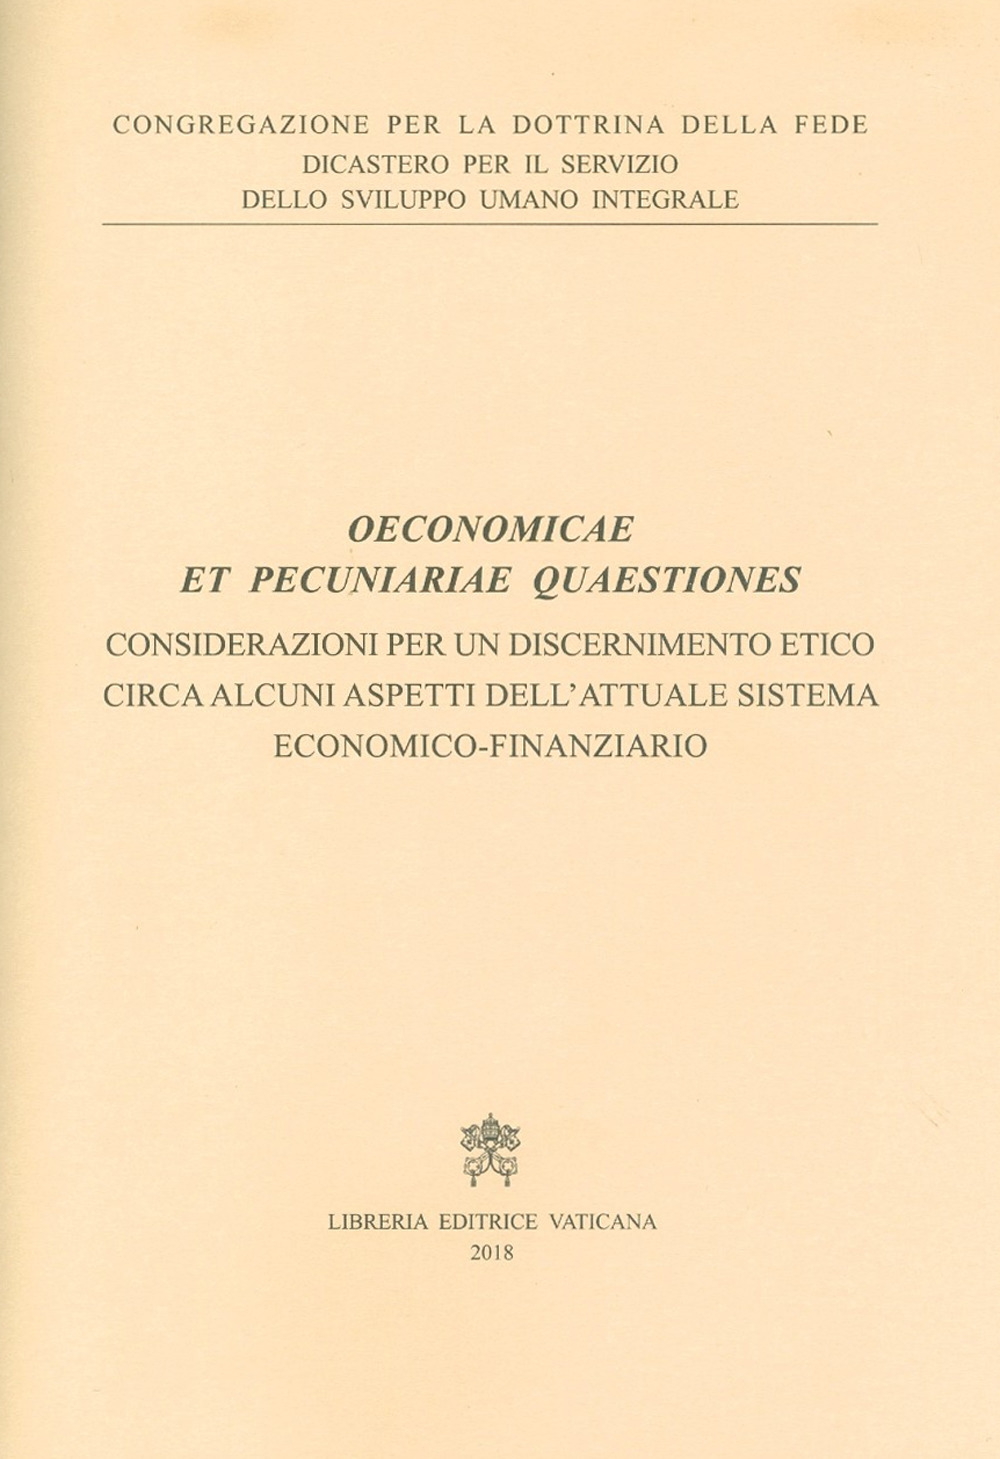 Image of Oeconomicae et pecuniariae quaestiones. Considerazioni per un discernimento etico circa alcuni aspetti dell'attuale sistema economico-finanziario